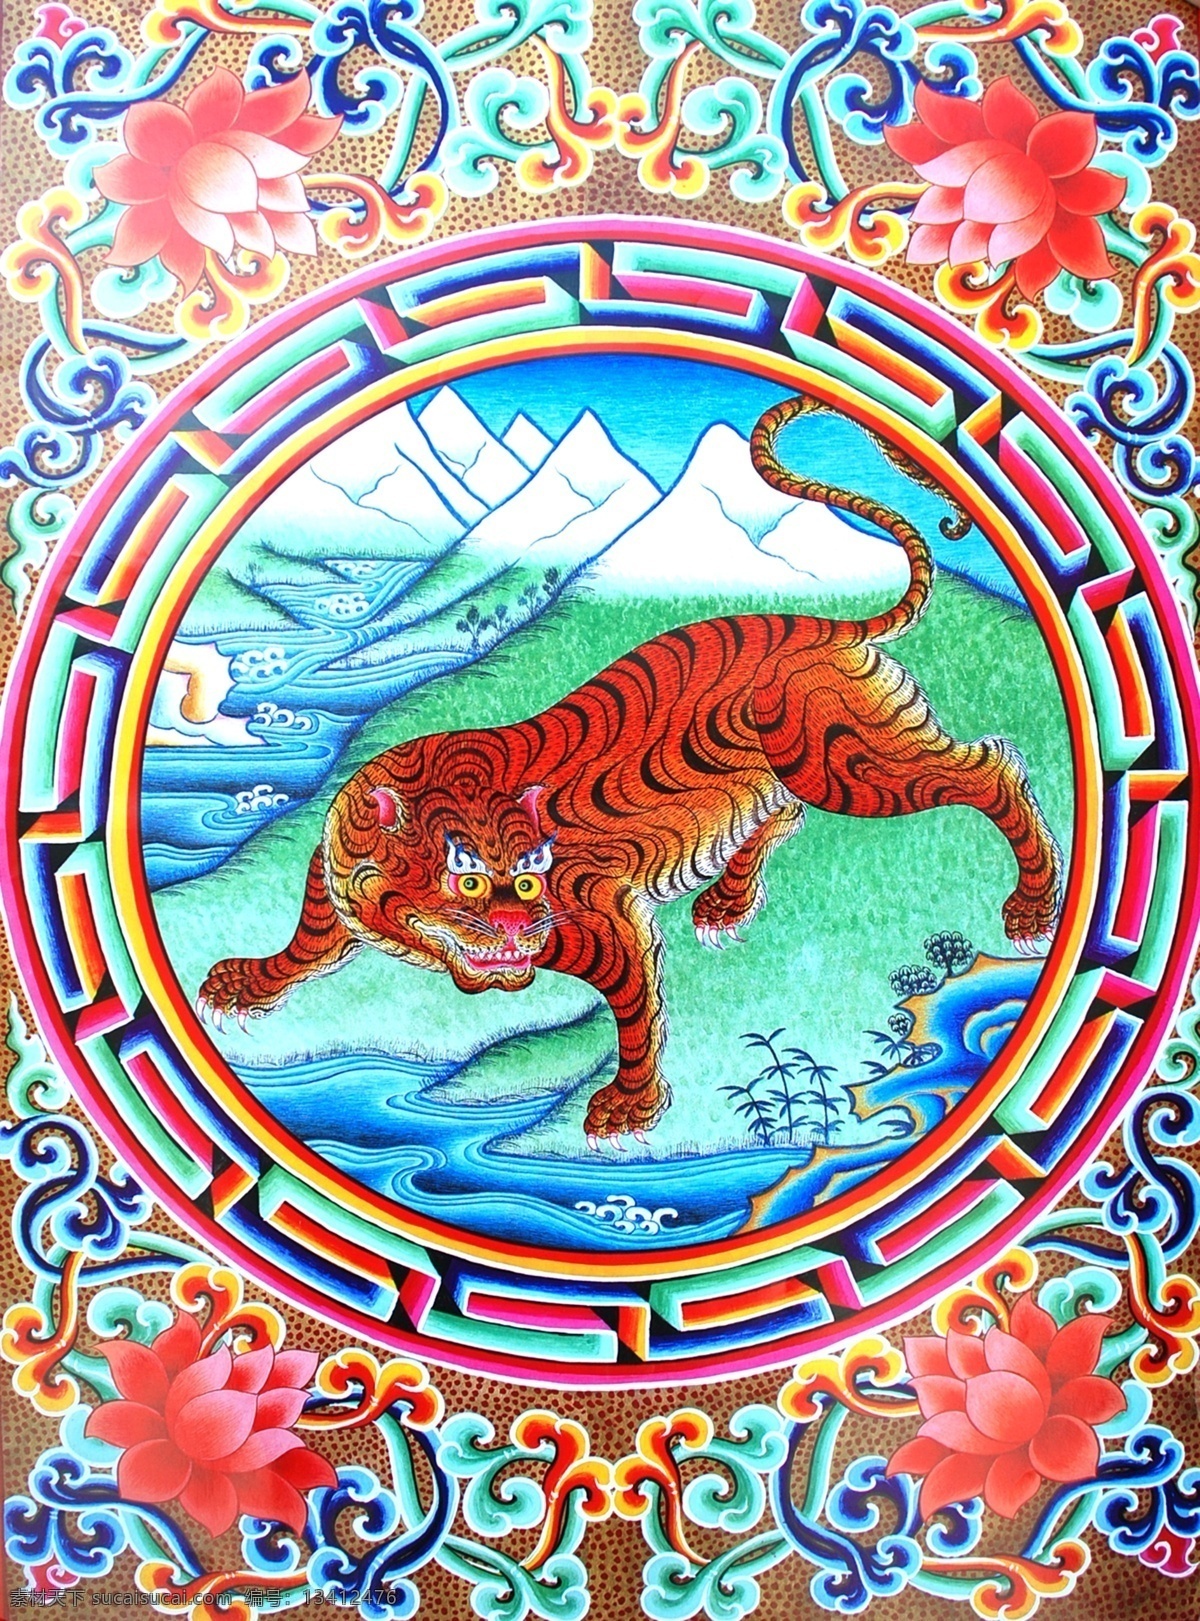 无框画 佛教 手绘 墙画 壁画 卧室画 绘画 吉祥 图案 藏族 宗教 和平 平安 宗教设计 藏族传统图案 老虎 绘画书法 文化艺术